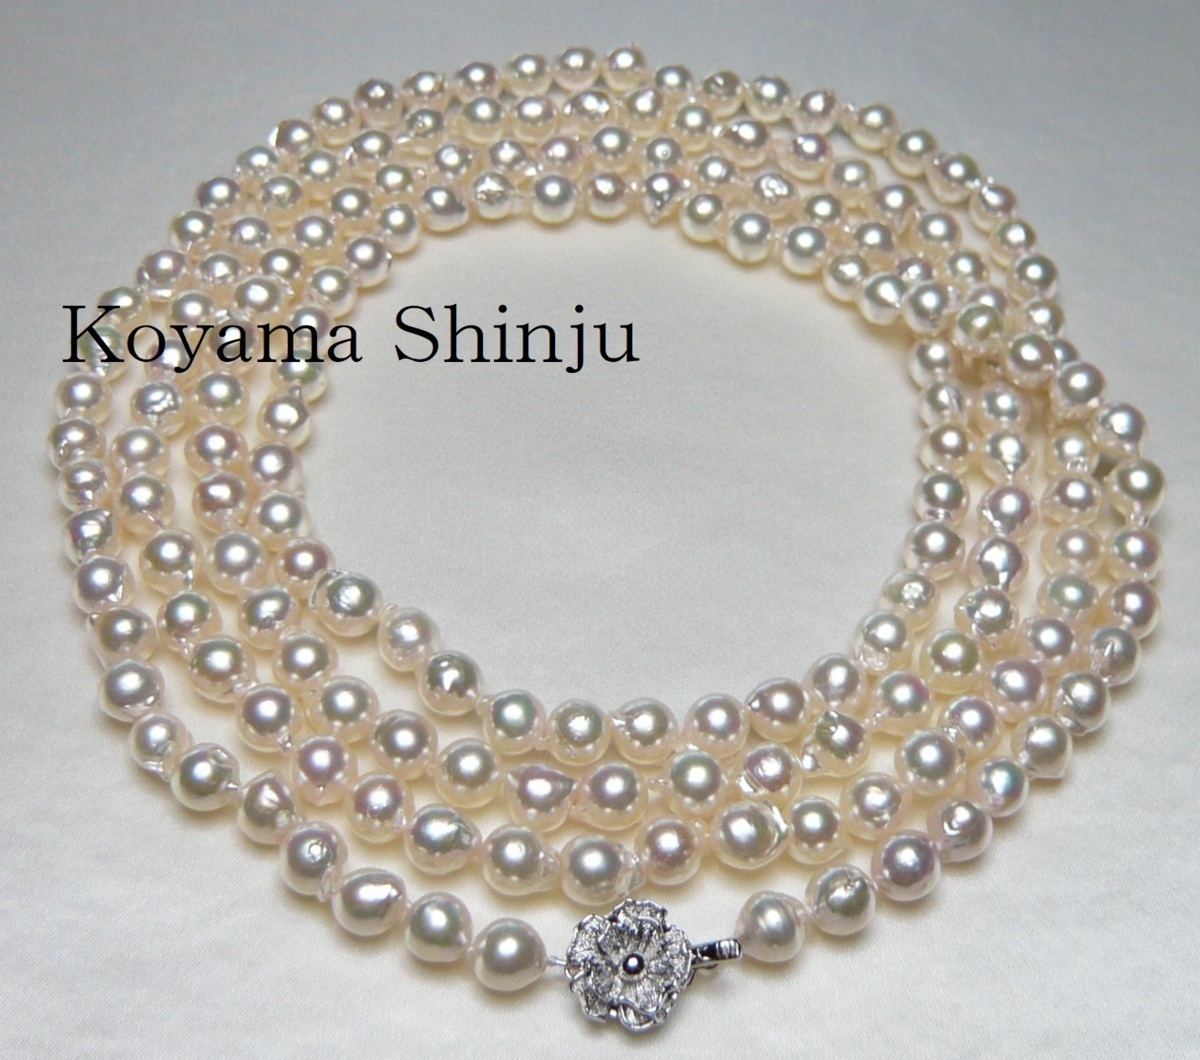 アクセサリー 最上の品質な 本真珠 モラビト ホワイト タサキ 艶 ミキモト ネックレス Tei Atai Dai E Atai